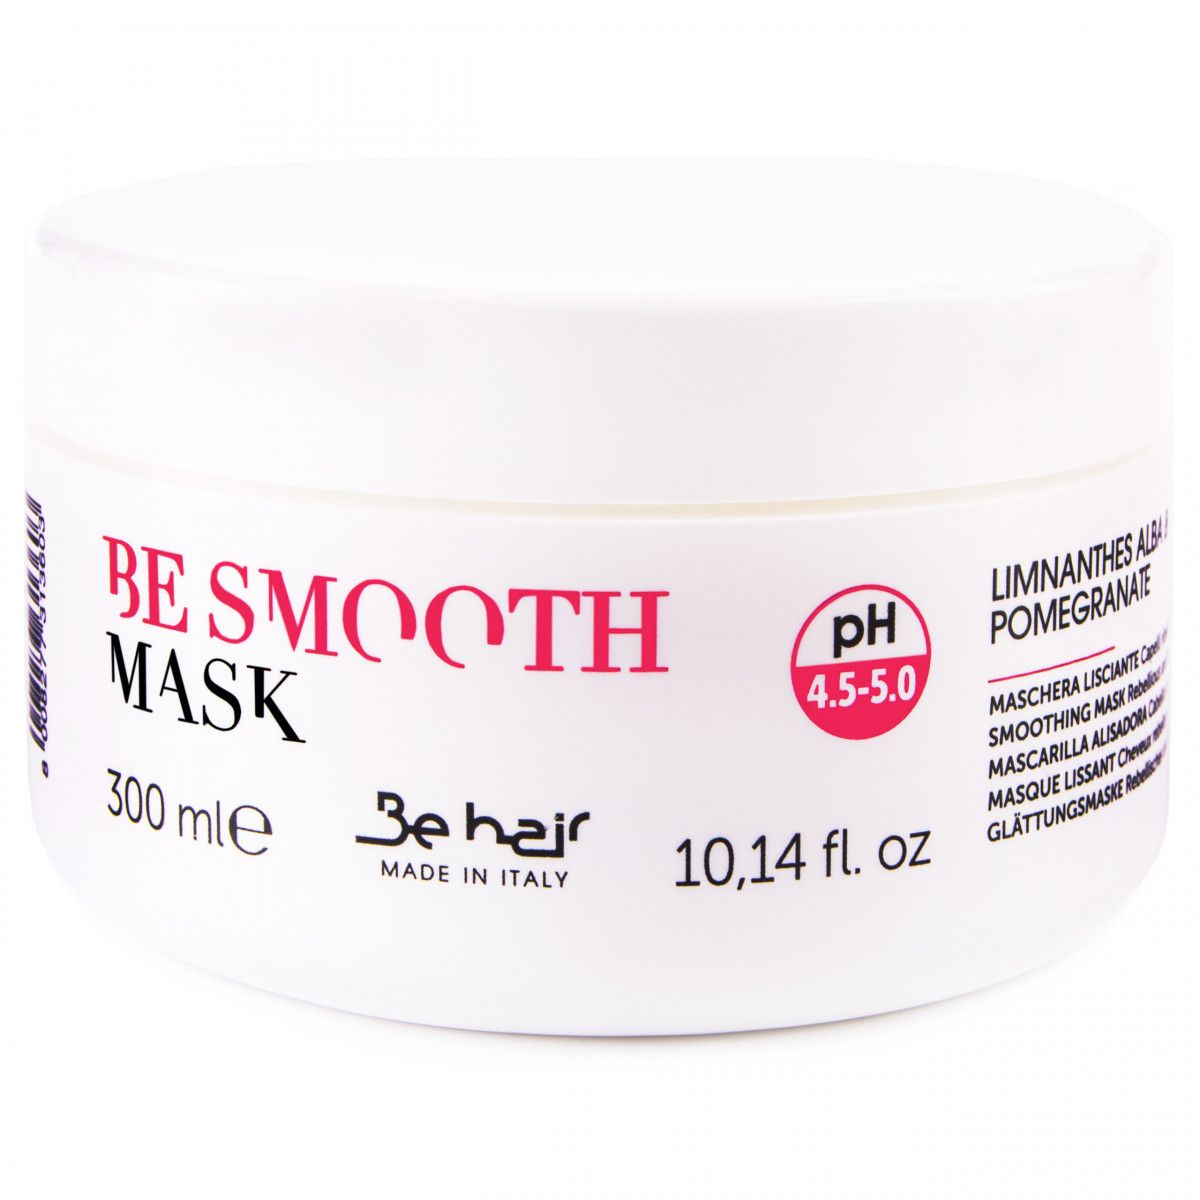 Be Hair Be Smooth Mask maska ułatwiająca rozczesywanie włosów 300ml sklep Gobli